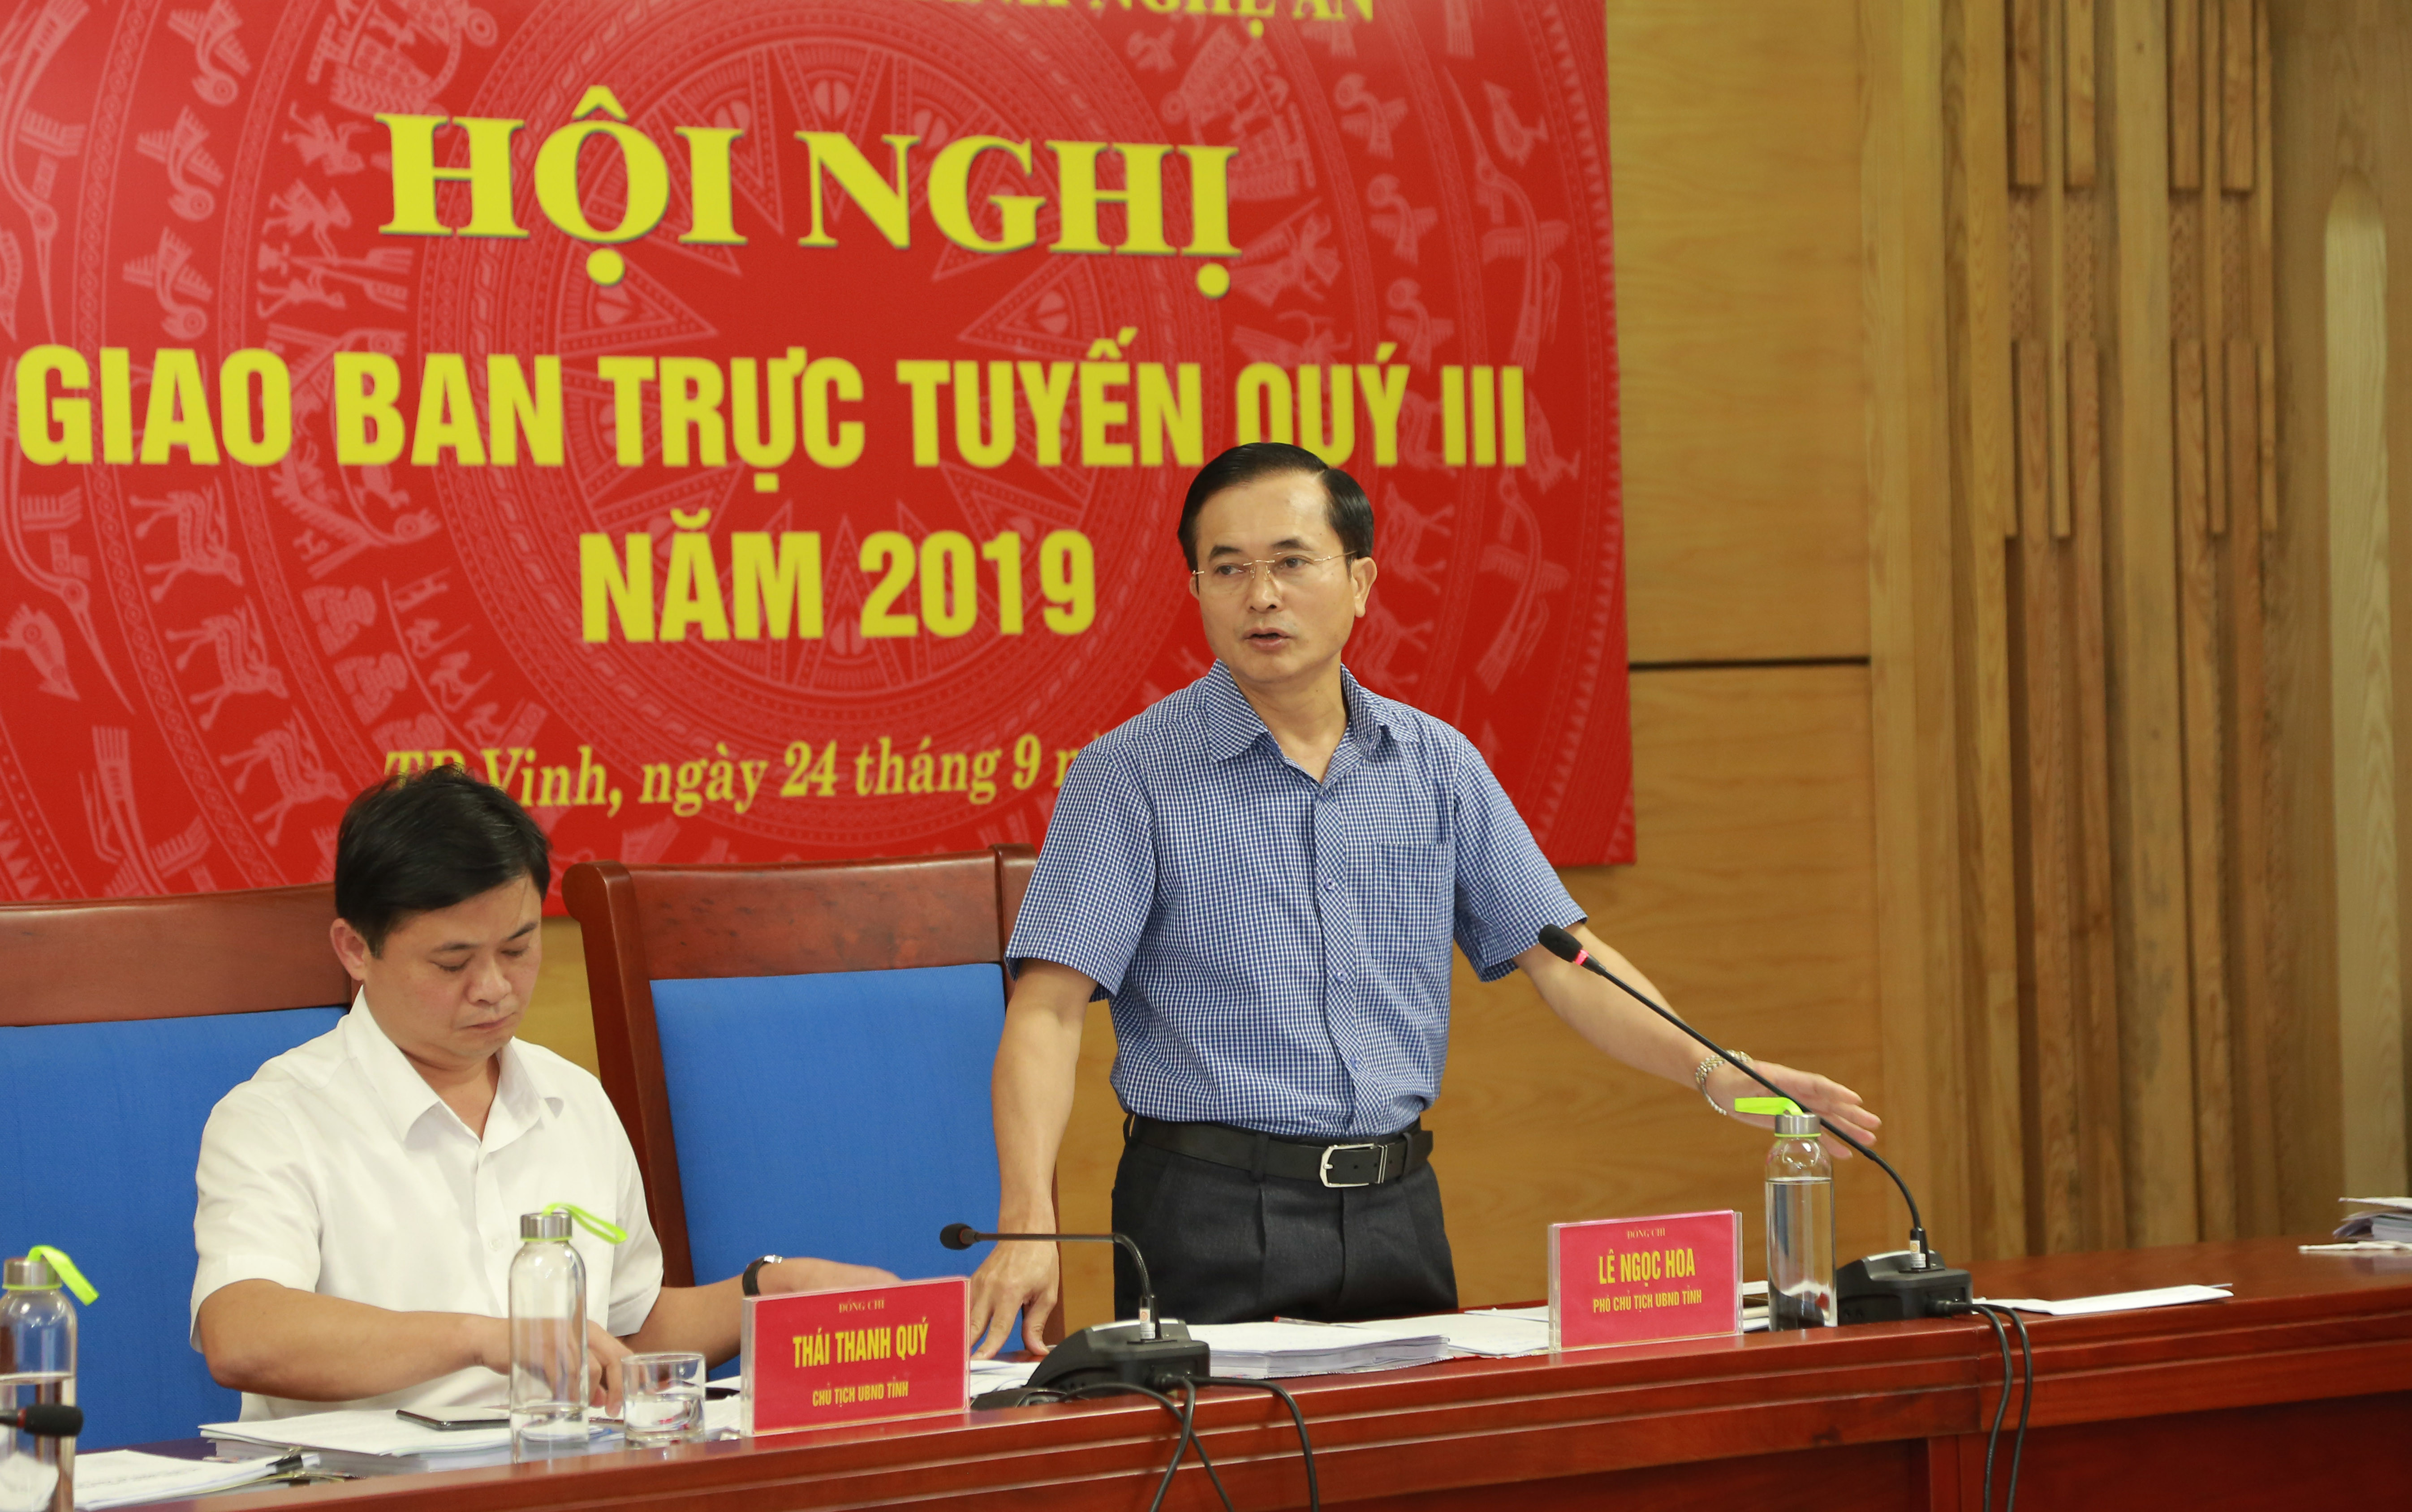 Phó Chủ tịch Lê Ngọc Hoa phát biểu tại hội nghị. Ảnh: Đào Tuấn